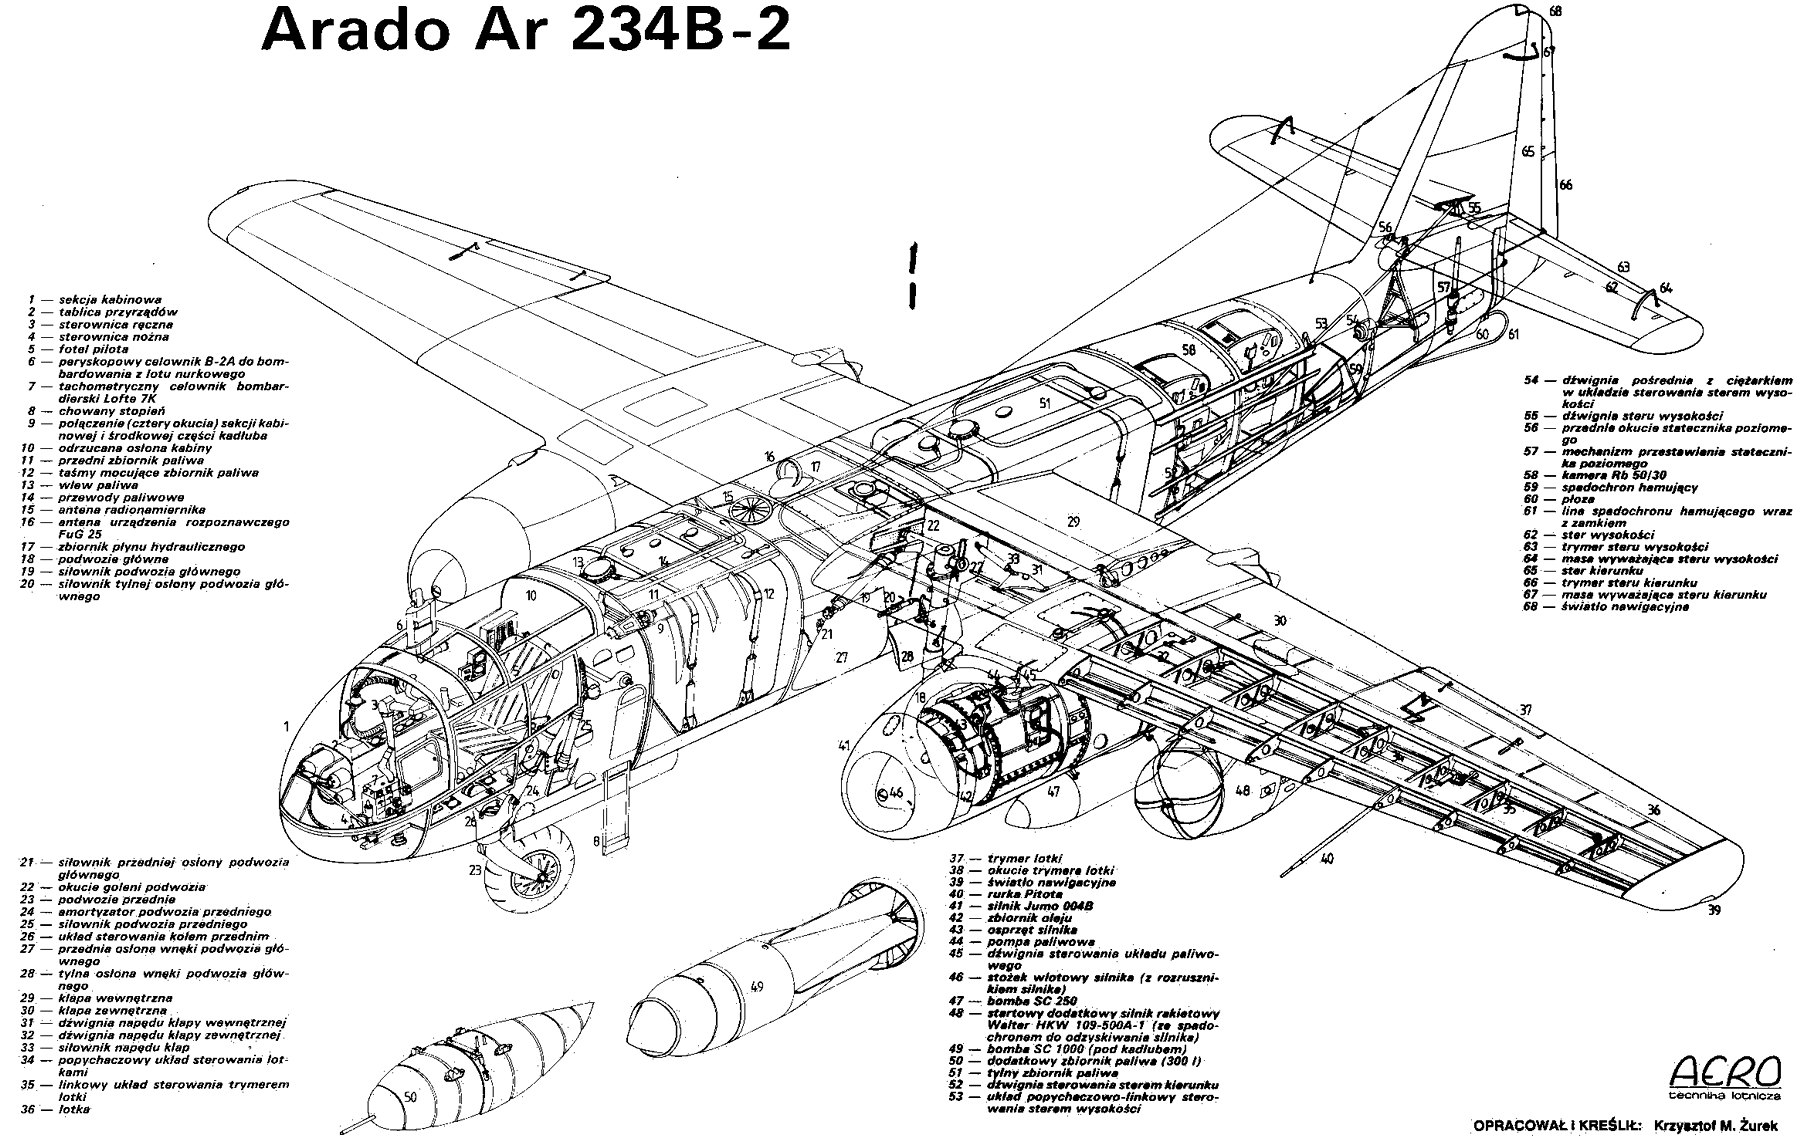 Images of Arado Ar 234 | 1800x1142